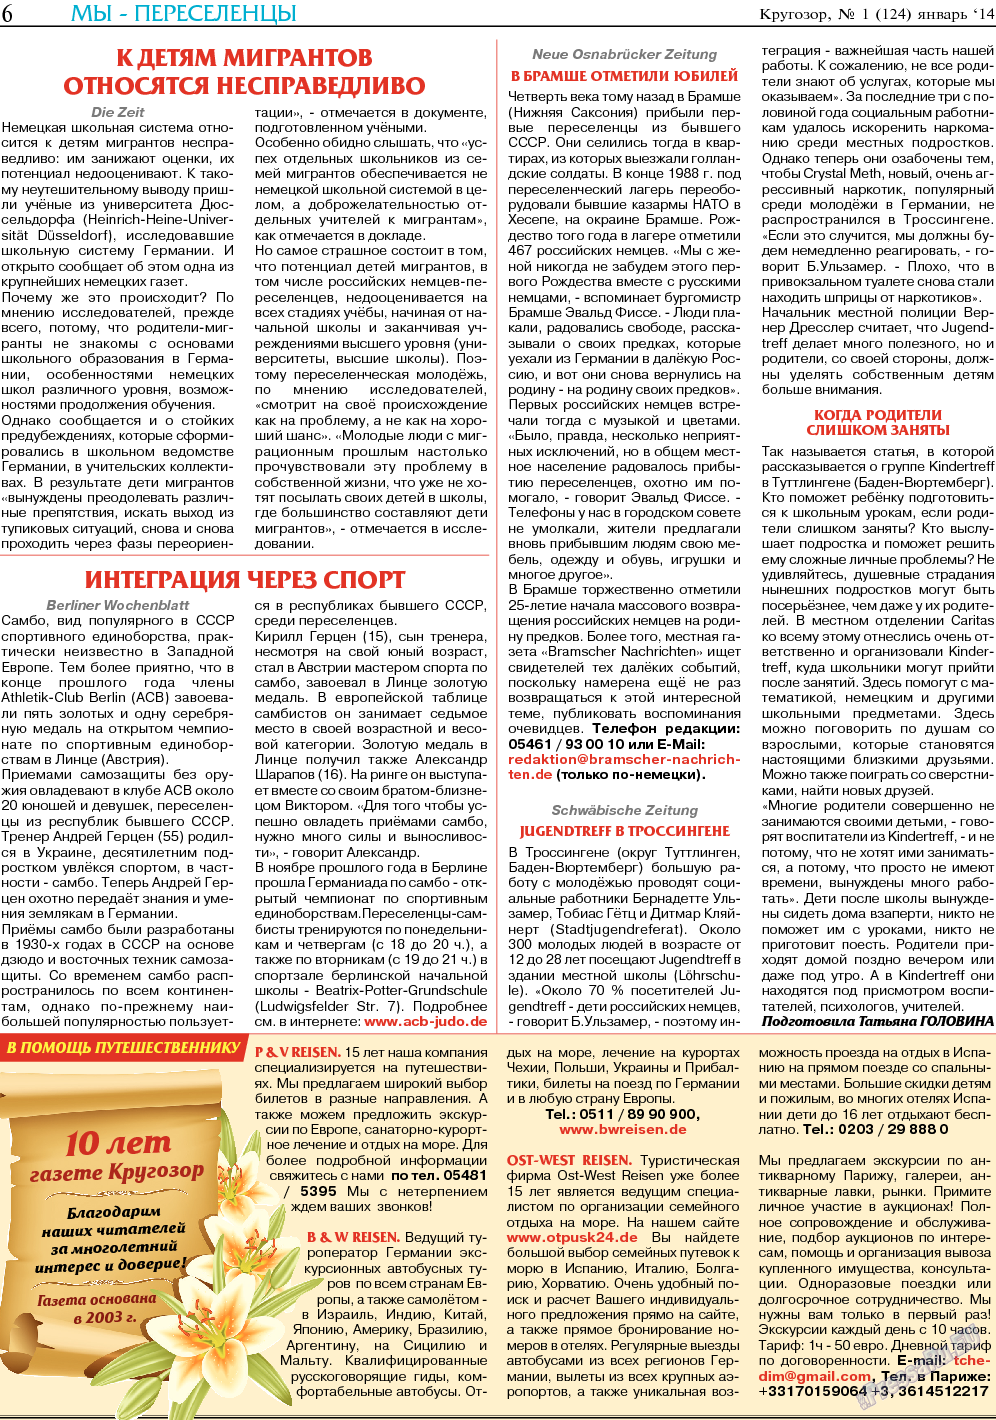 Кругозор, газета. 2014 №1 стр.6